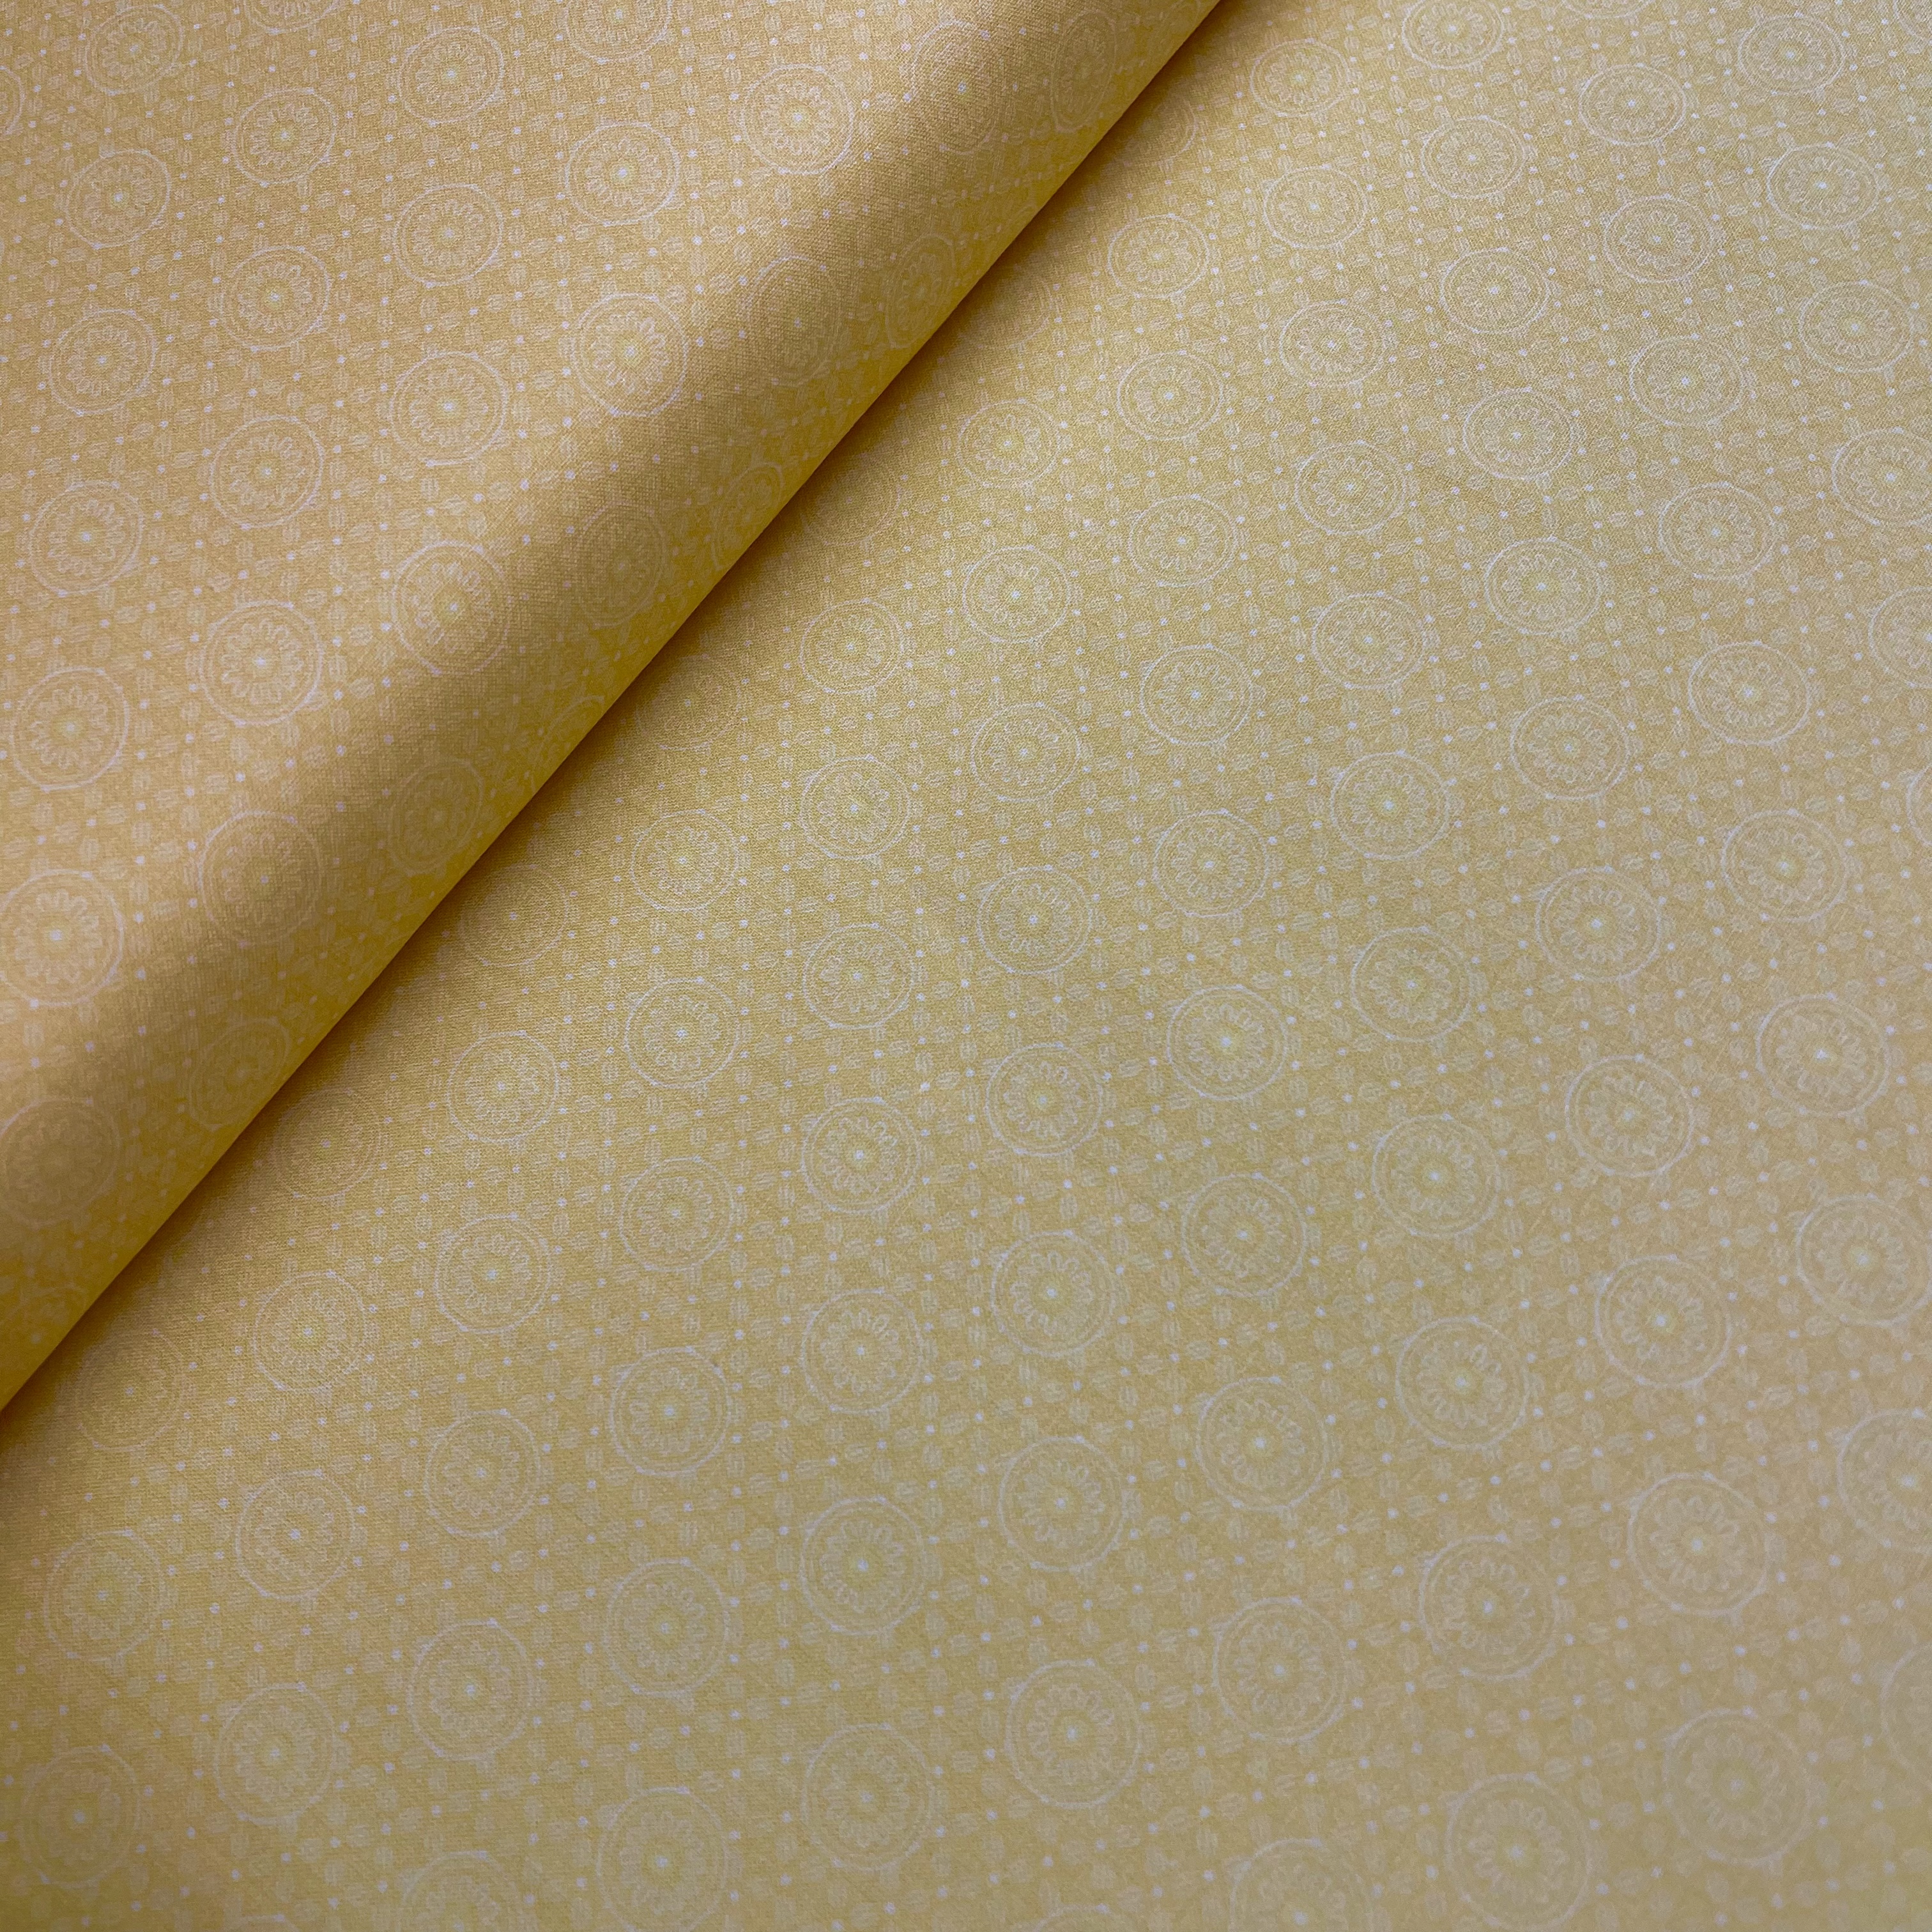 Trachten Baumwolle Serie Legan Kreise Gelb